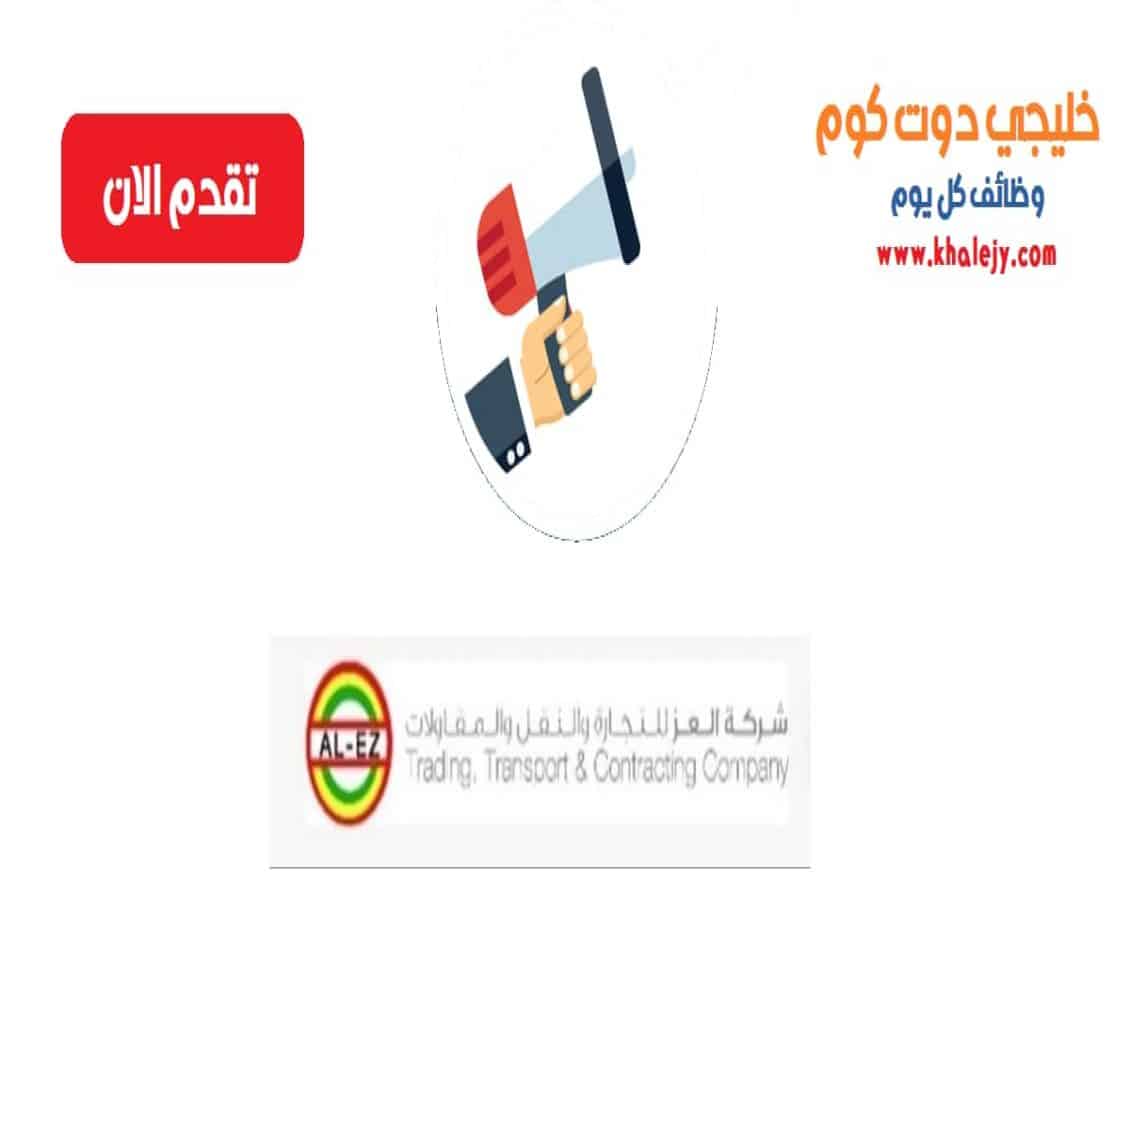 وظائف شركة العز للتجارة و النقل و المقاولات في سلطنة عمان